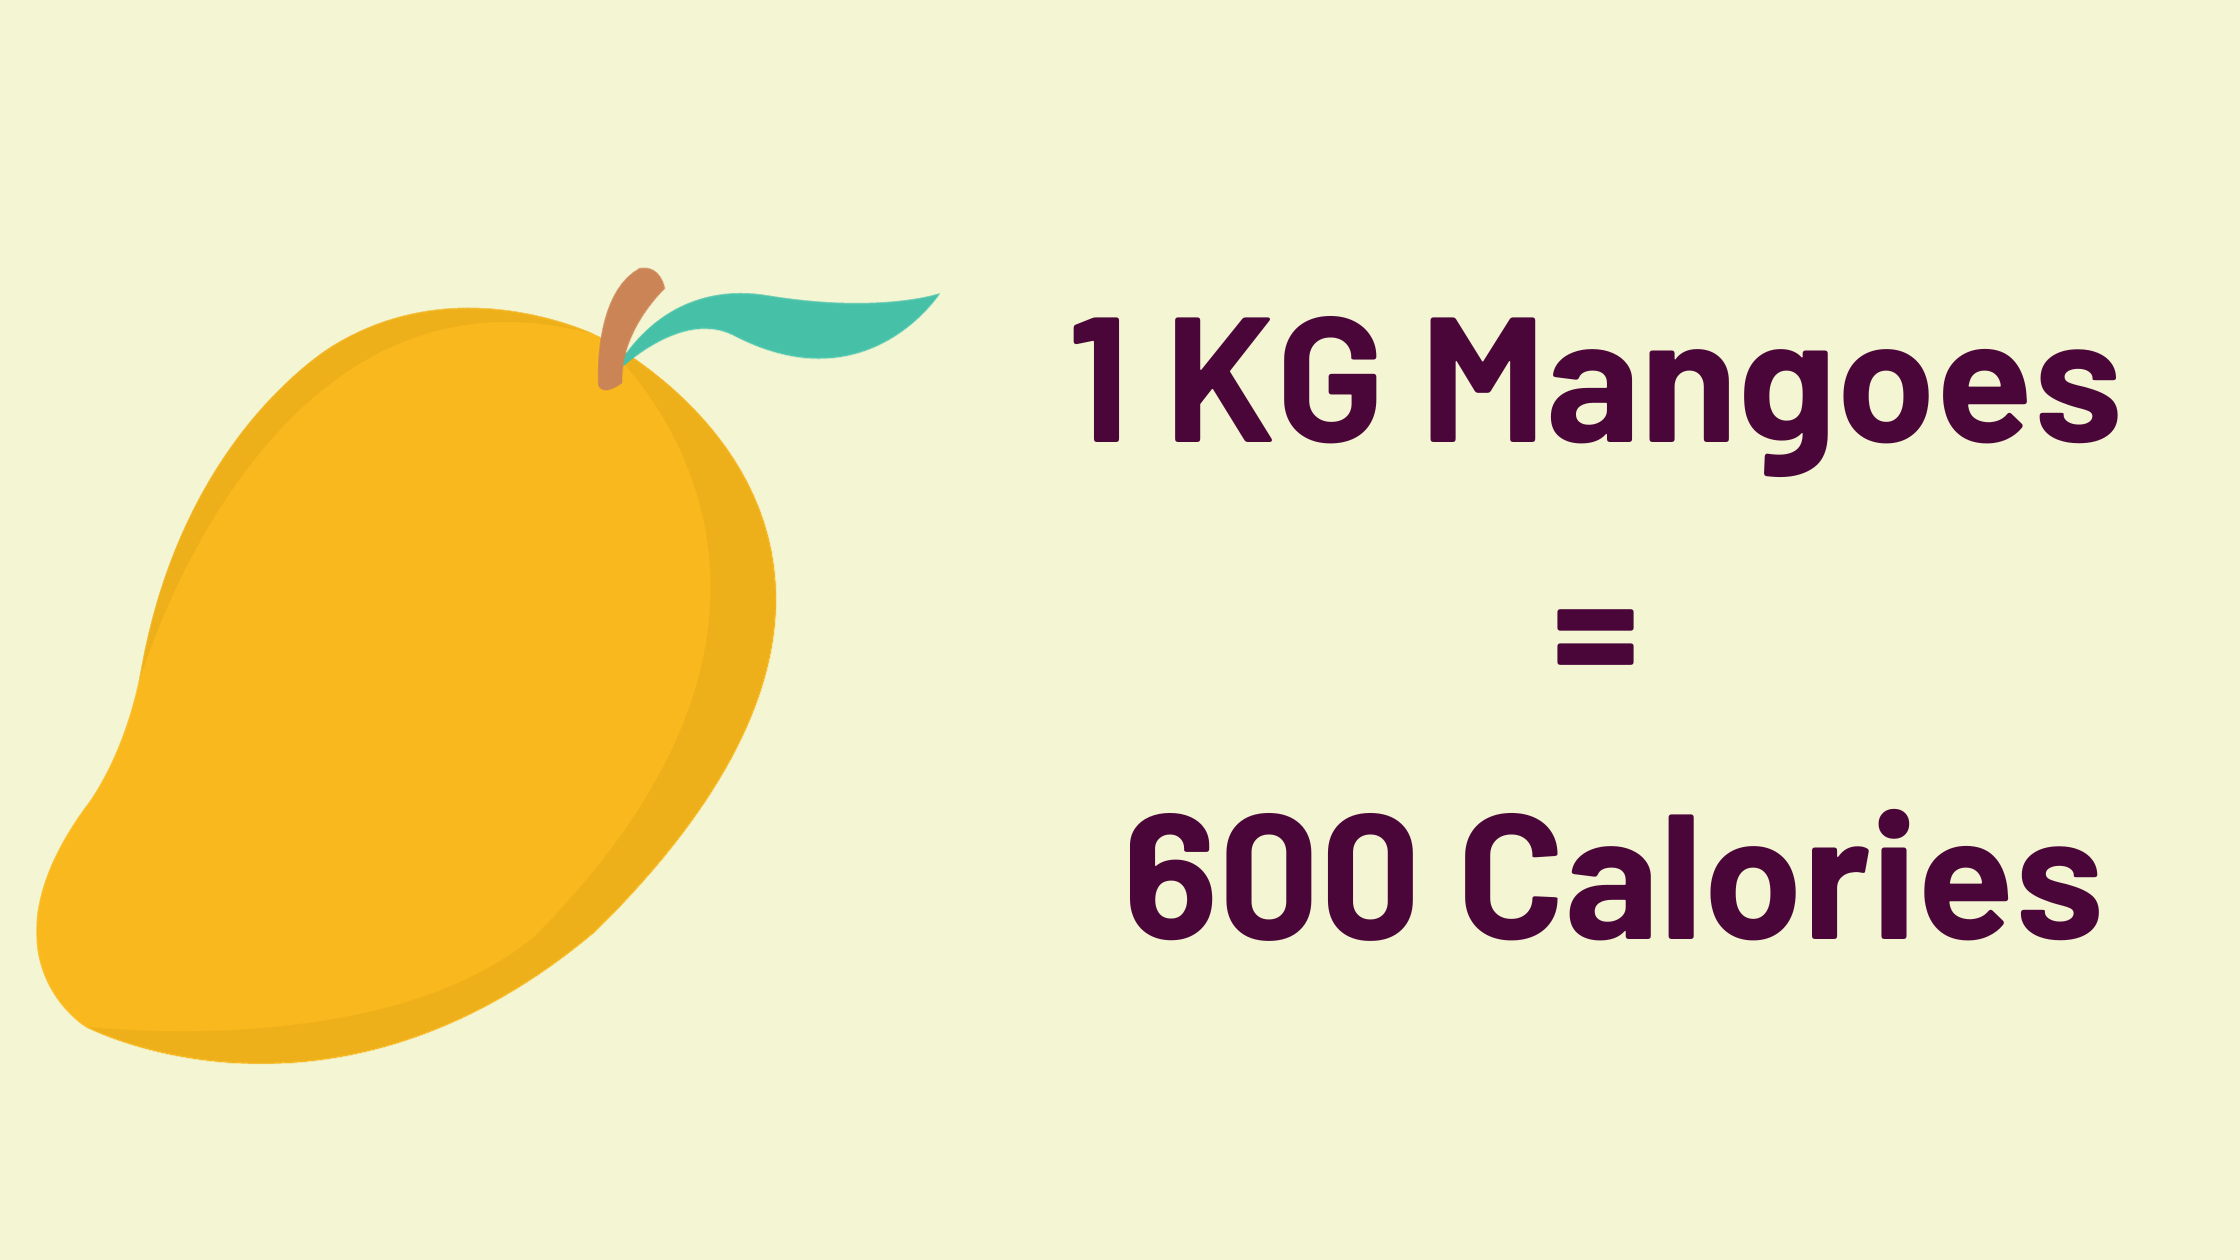 1 KG Mangoes = 600 Calories